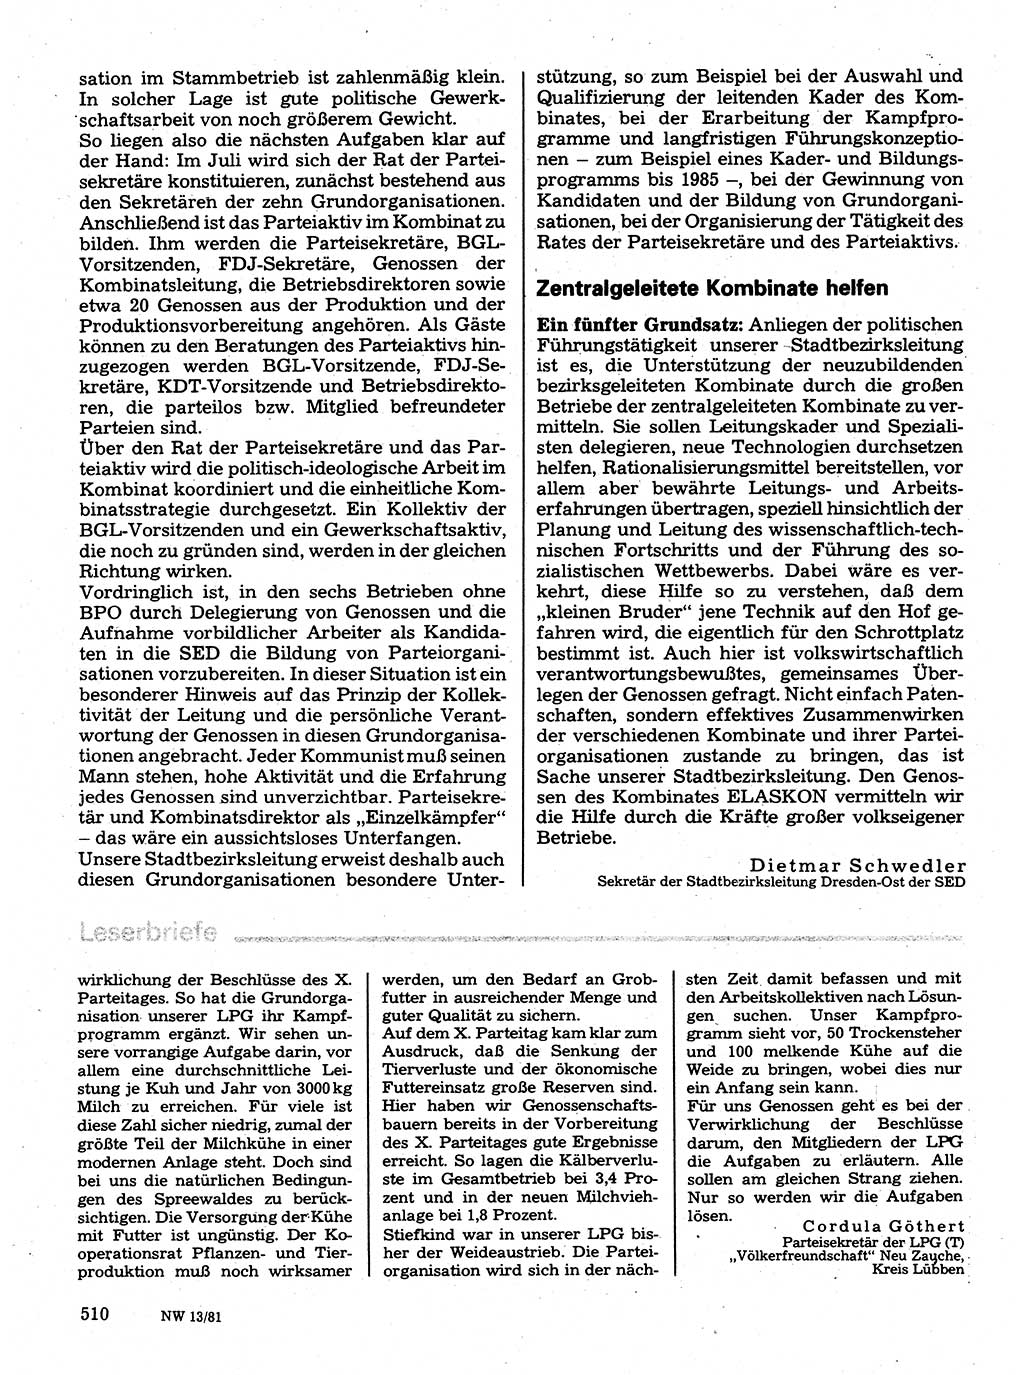 Neuer Weg (NW), Organ des Zentralkomitees (ZK) der SED (Sozialistische Einheitspartei Deutschlands) für Fragen des Parteilebens, 36. Jahrgang [Deutsche Demokratische Republik (DDR)] 1981, Seite 510 (NW ZK SED DDR 1981, S. 510)